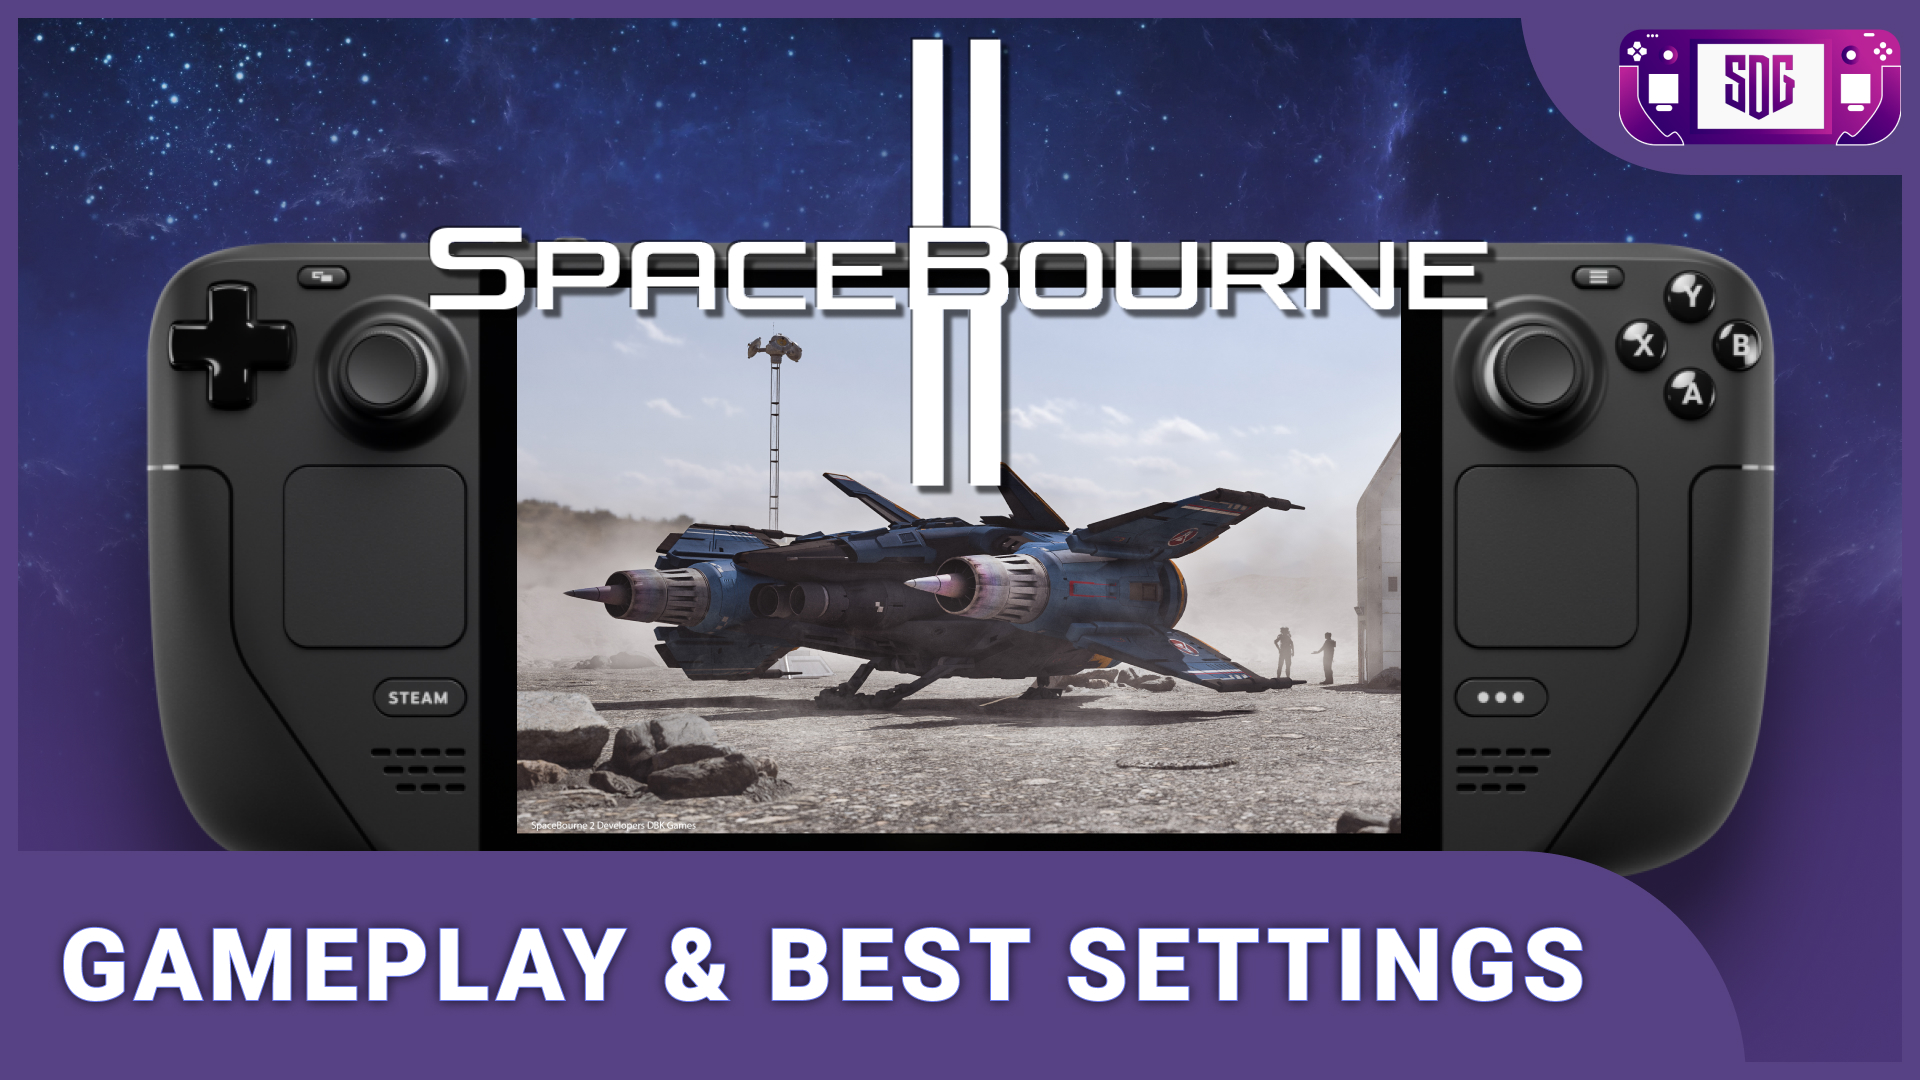 SpaceBourne 2 on Steam